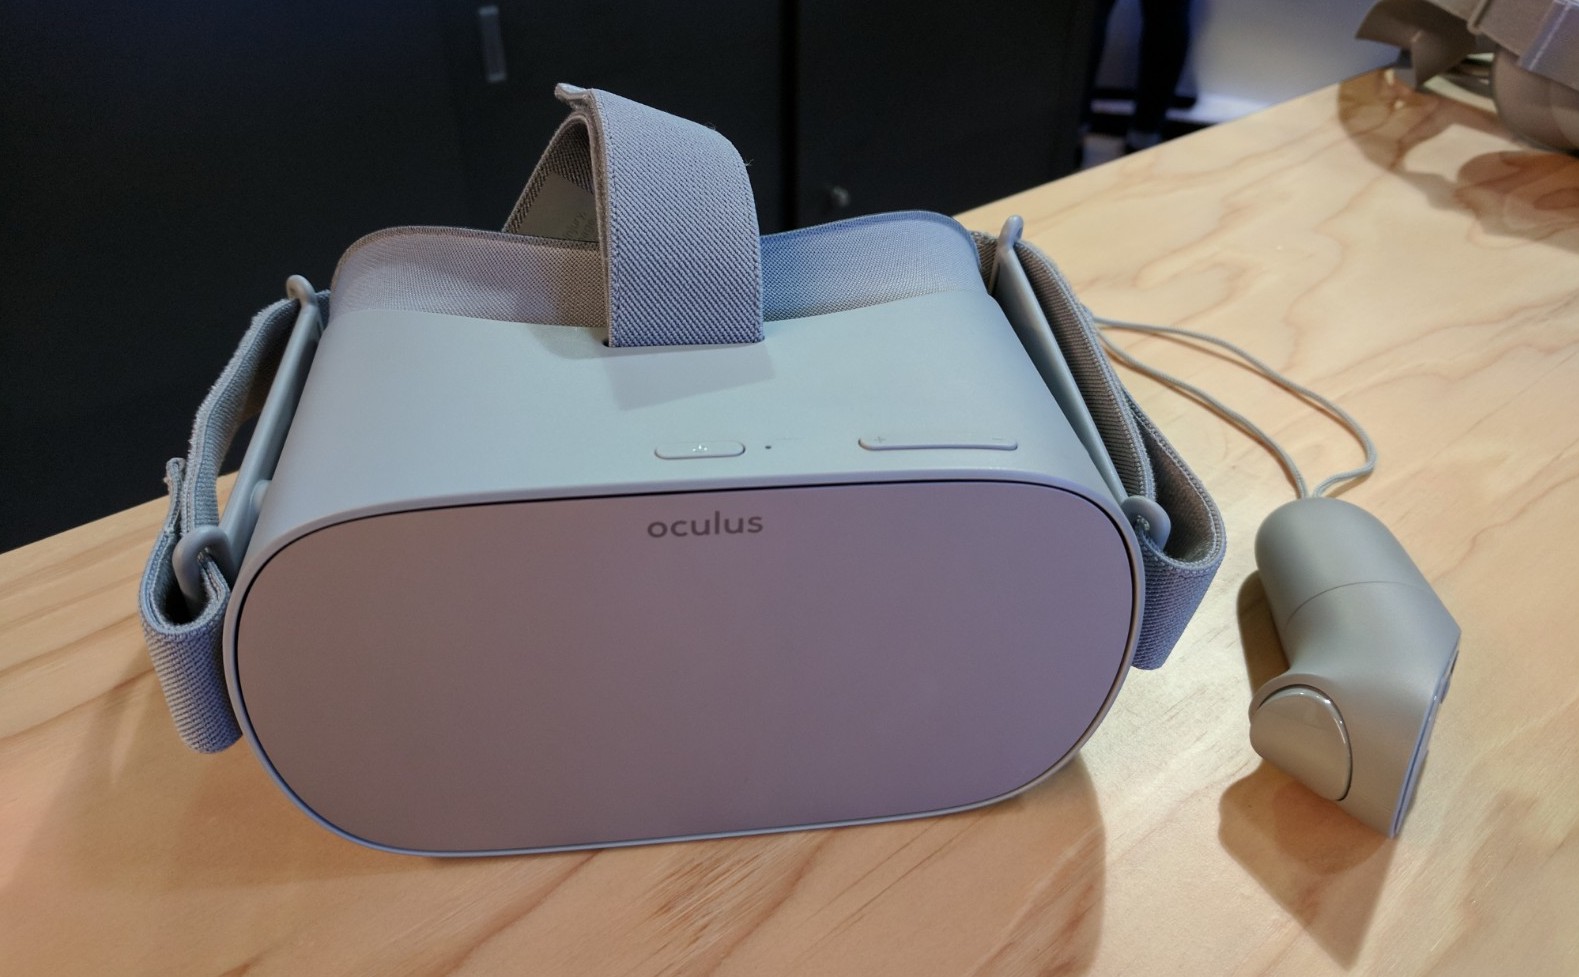 Oculus Go: Дизайн и удобство использования